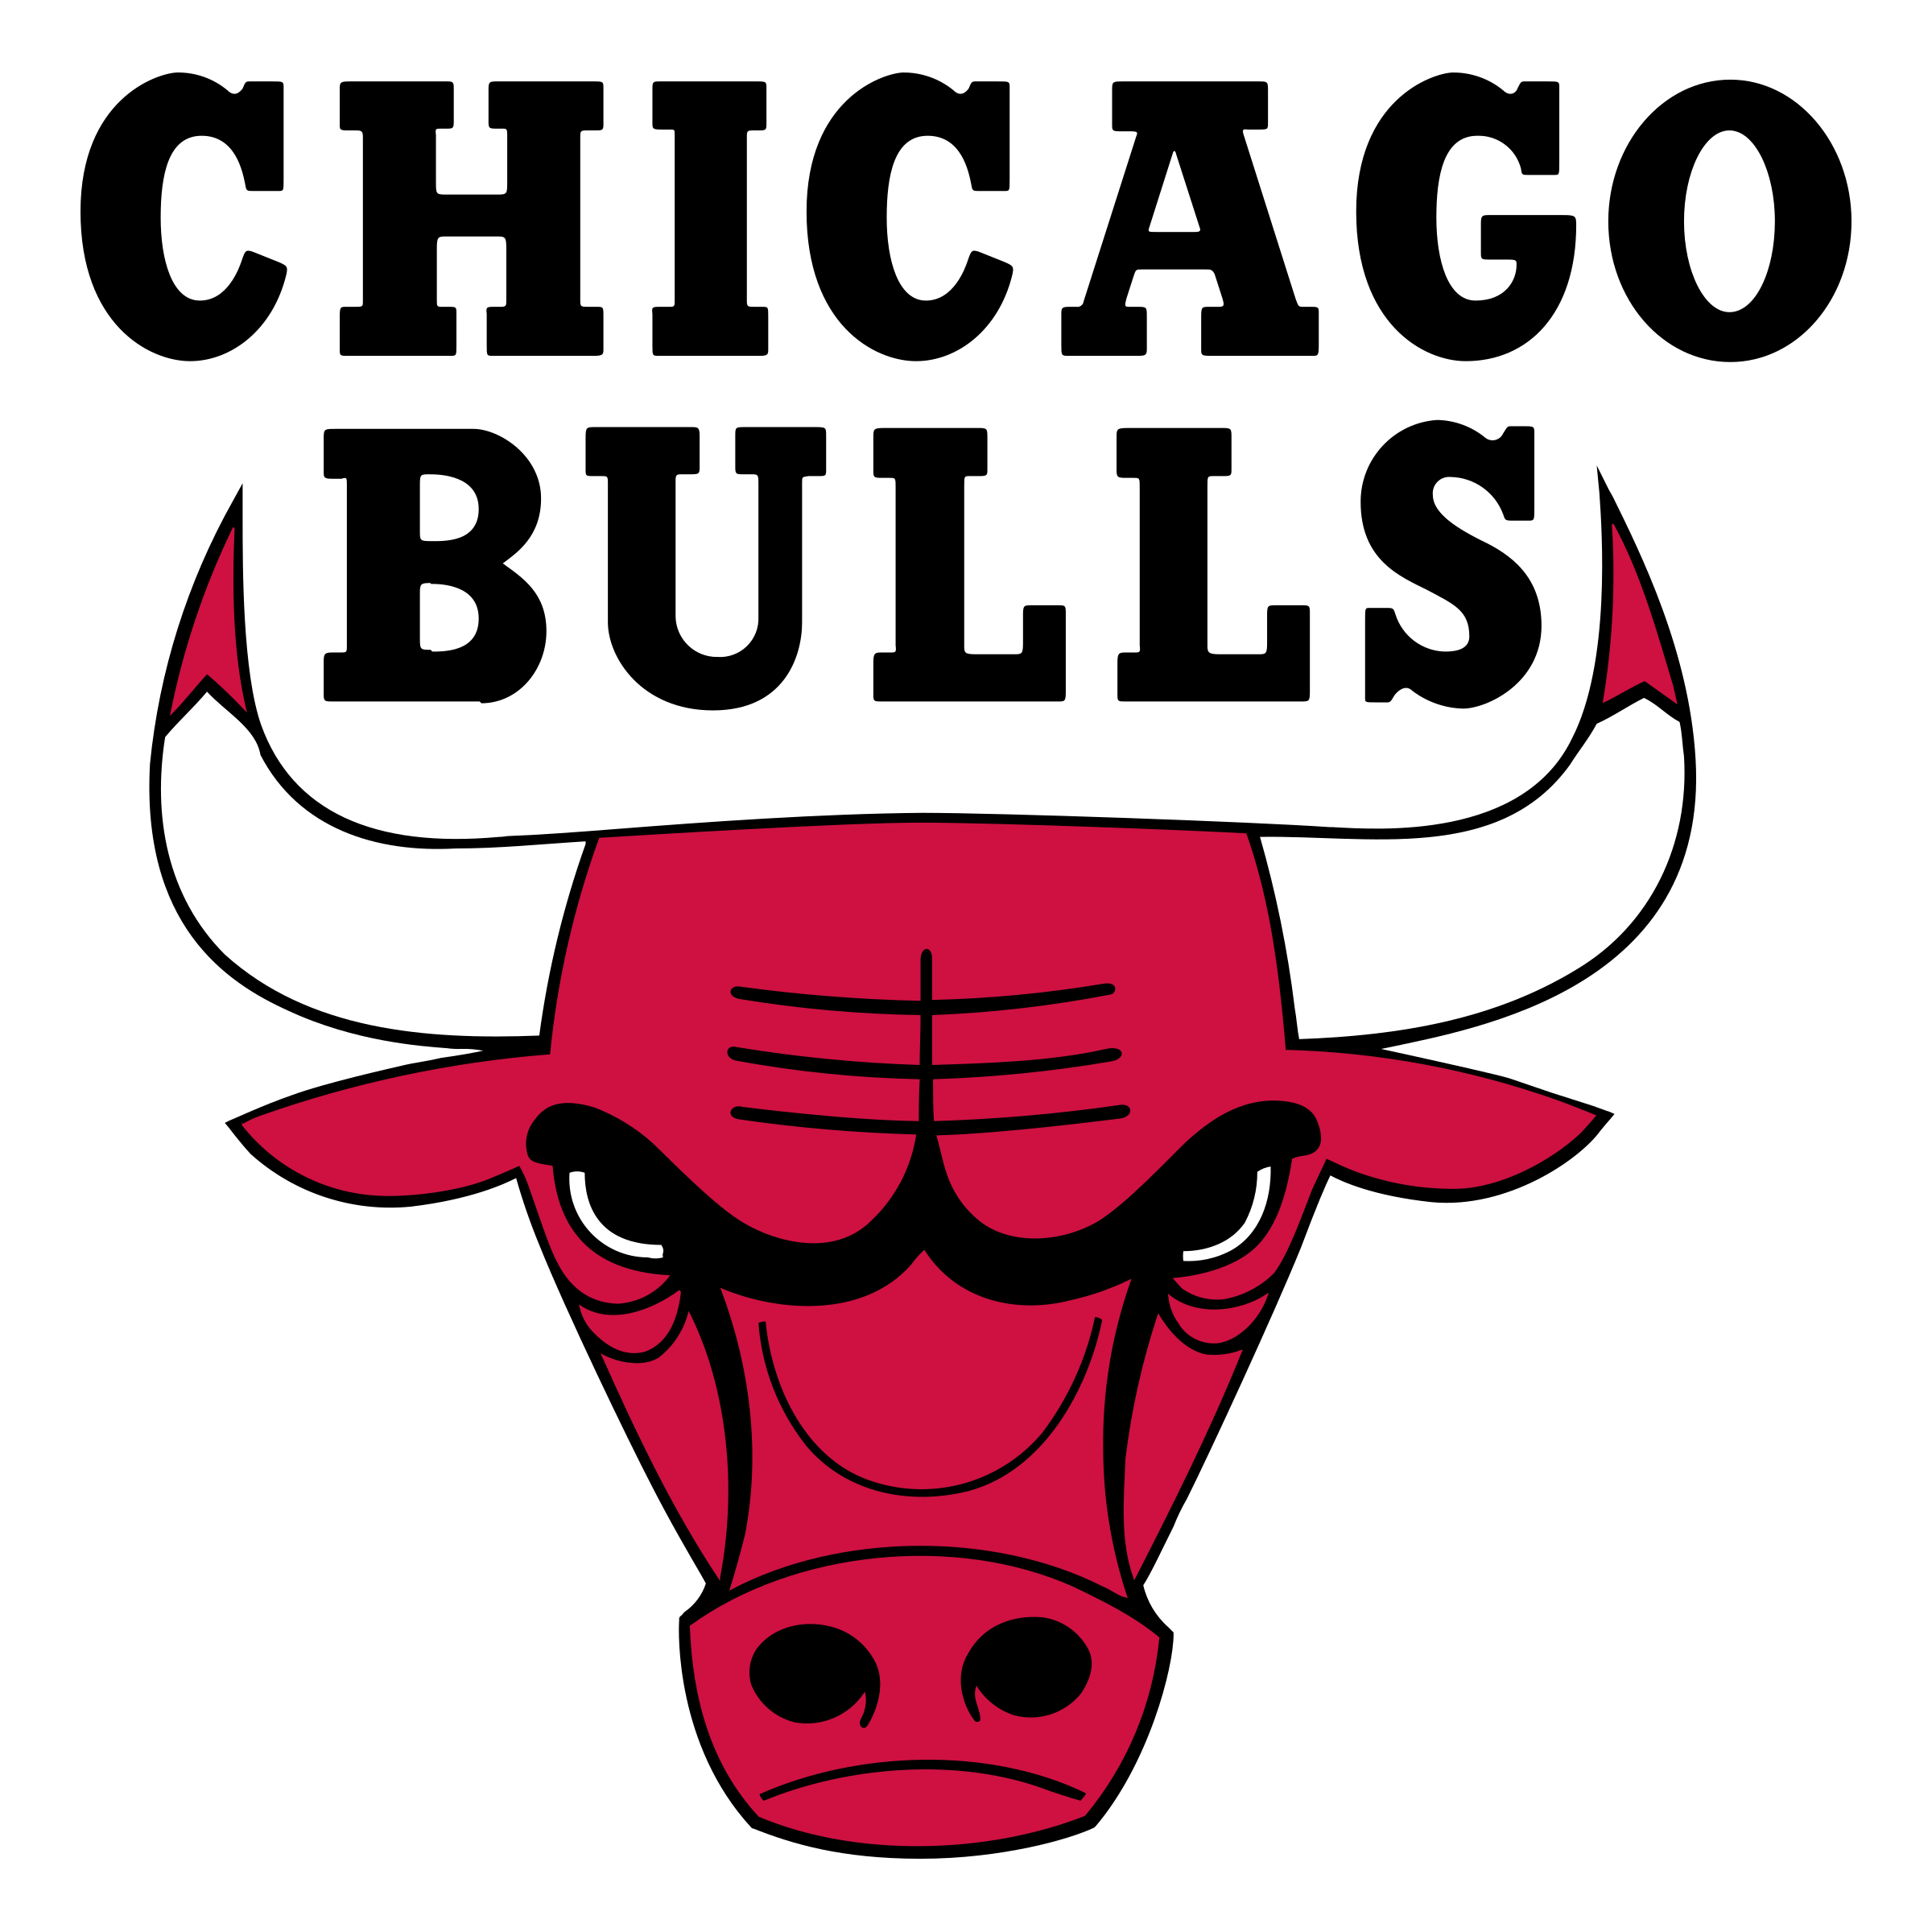 Chicago Bulls Logo Png - KibrisPDR